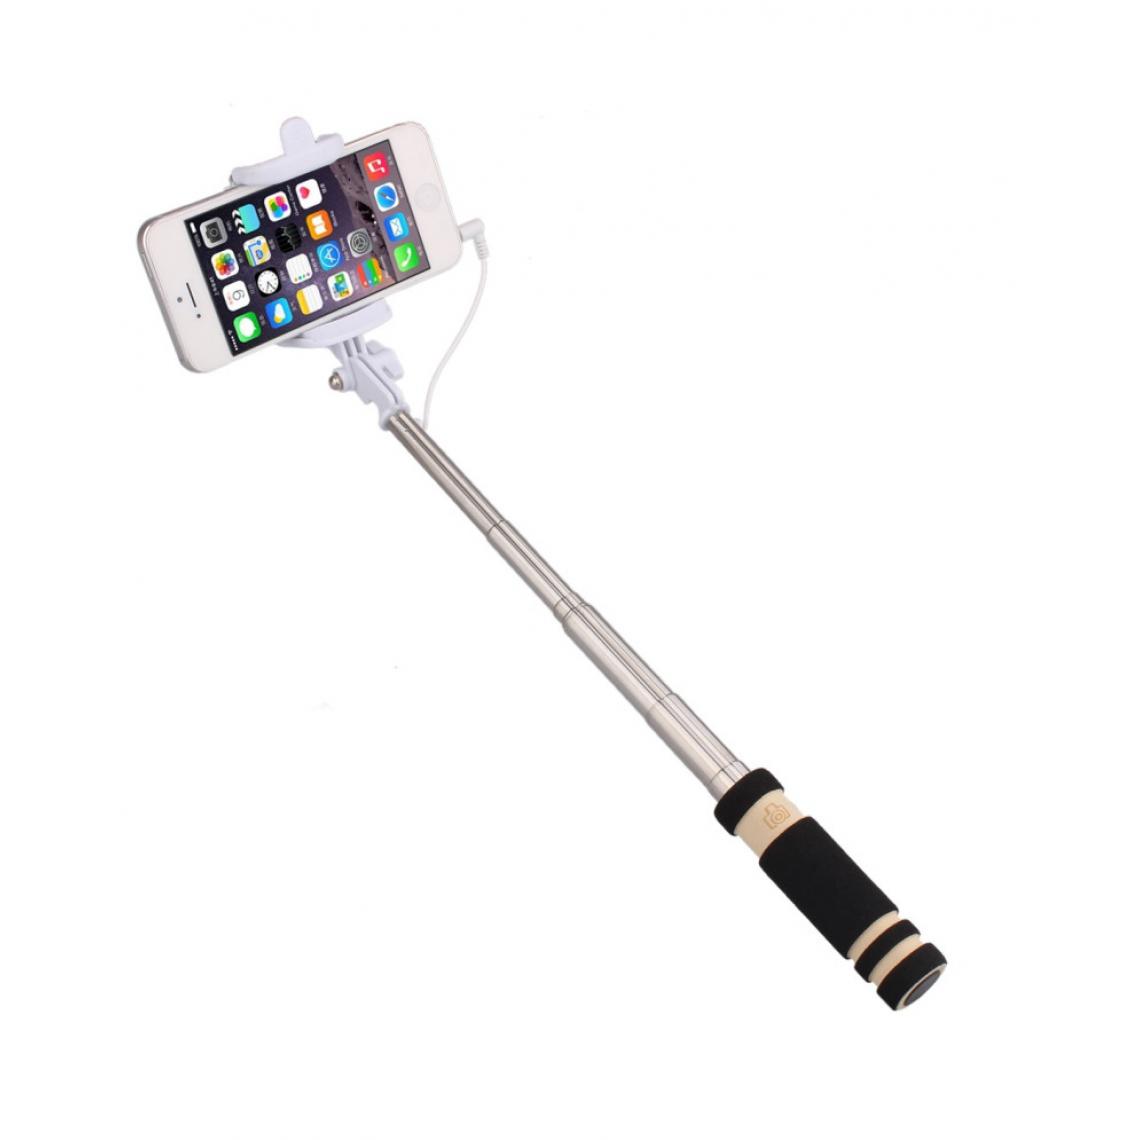 Shot - Mini Perche Selfie pour SAMSUNG Galaxy A50 Smartphone avec Cable Jack Selfie Stick Android IOS Reglable Bouton Photo (NOIR) - Autres accessoires smartphone